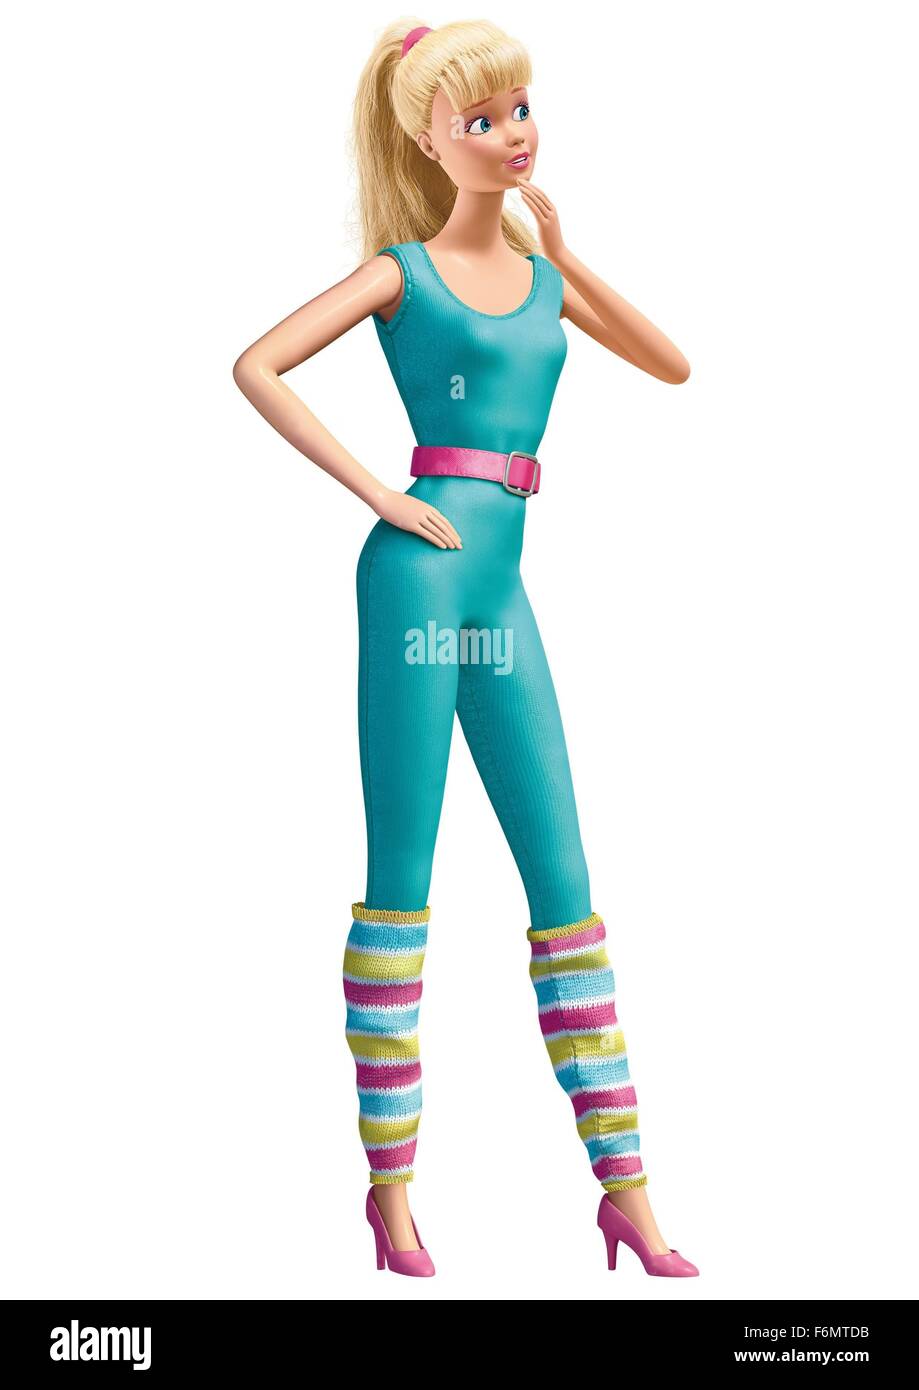 Toy story 3 barbie immagini e fotografie stock ad alta risoluzione - Alamy